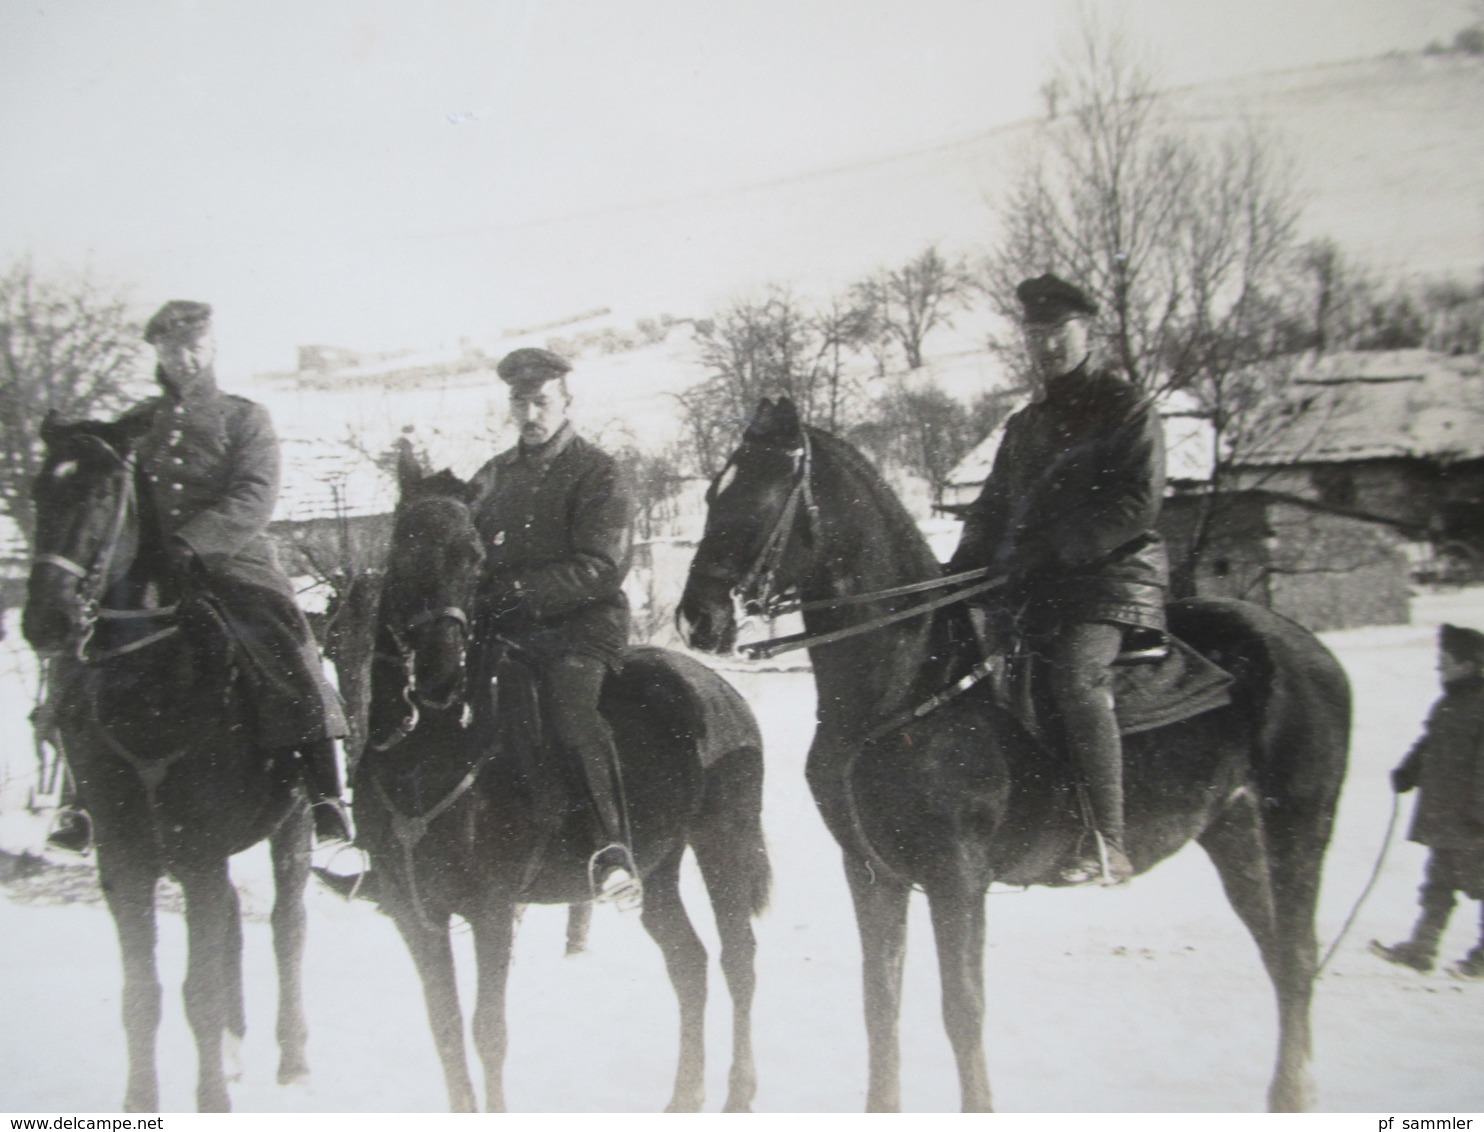 Echtfoto Großes Bild Mit Reiterstaffel / 4 Reiter. 1 Weißes Pferd Und 3 Schwarze! 1. Weltkrieg Soldaten Im Winter - Krieg, Militär